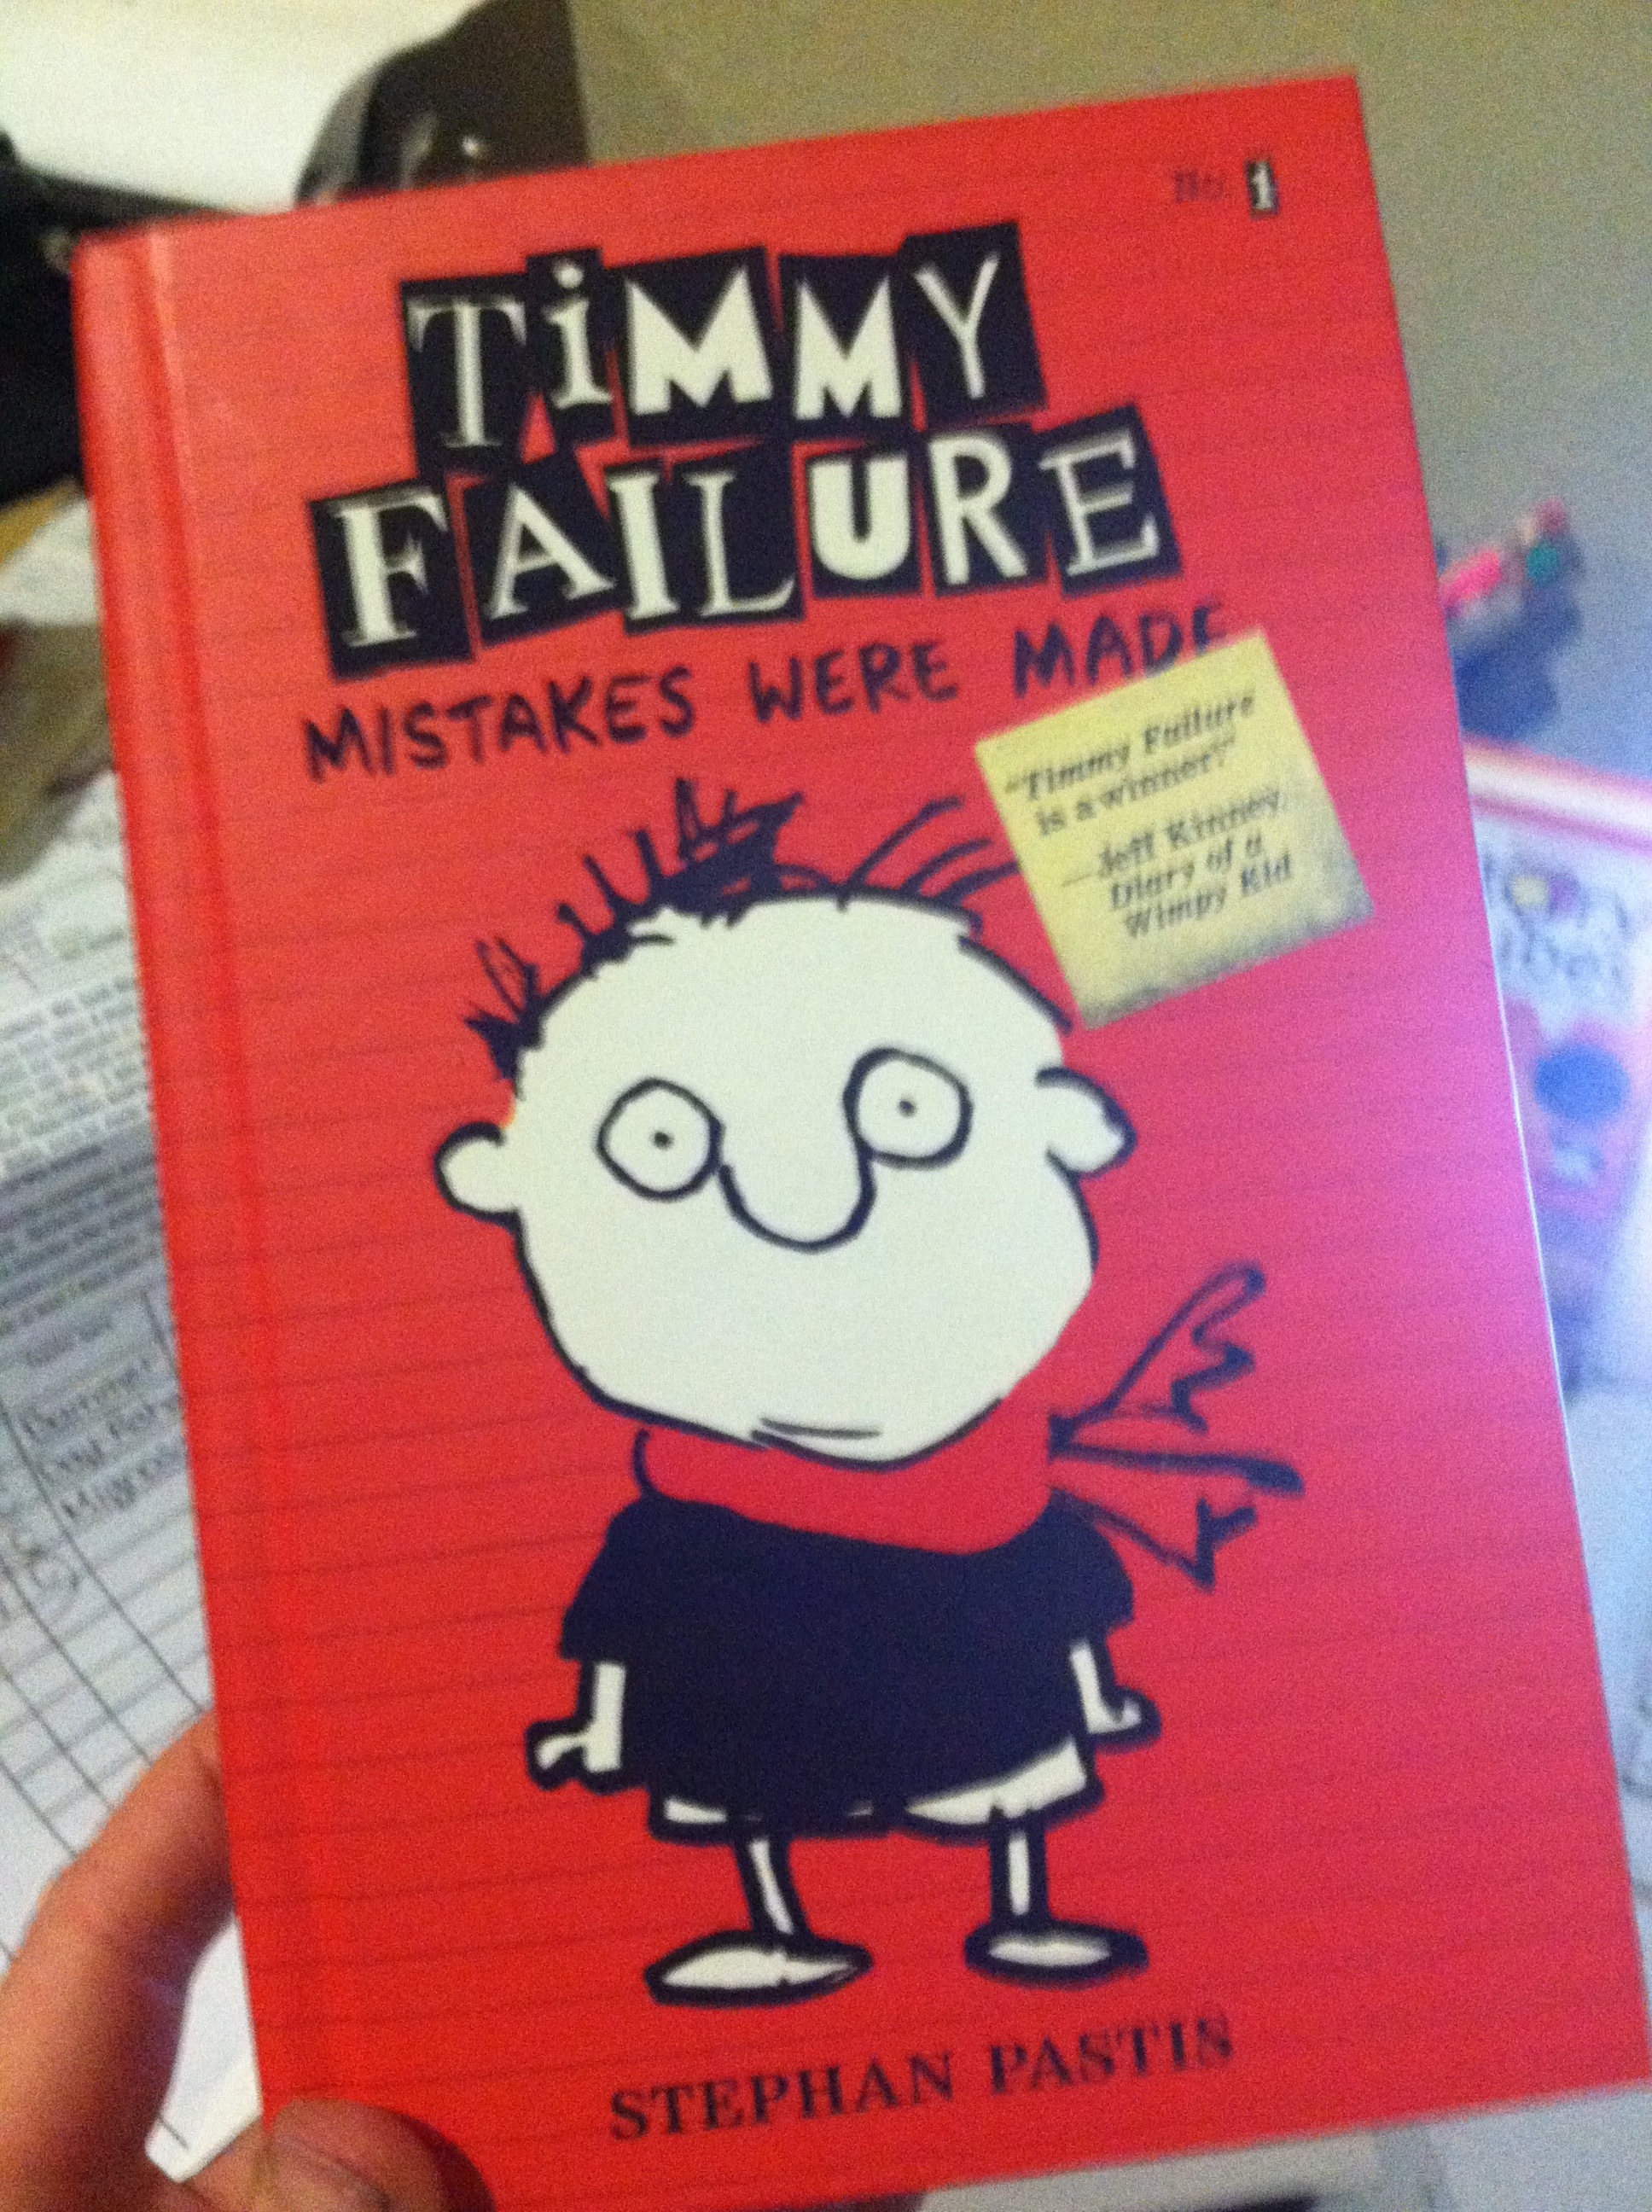 Woo Hoo Timmy Failure!